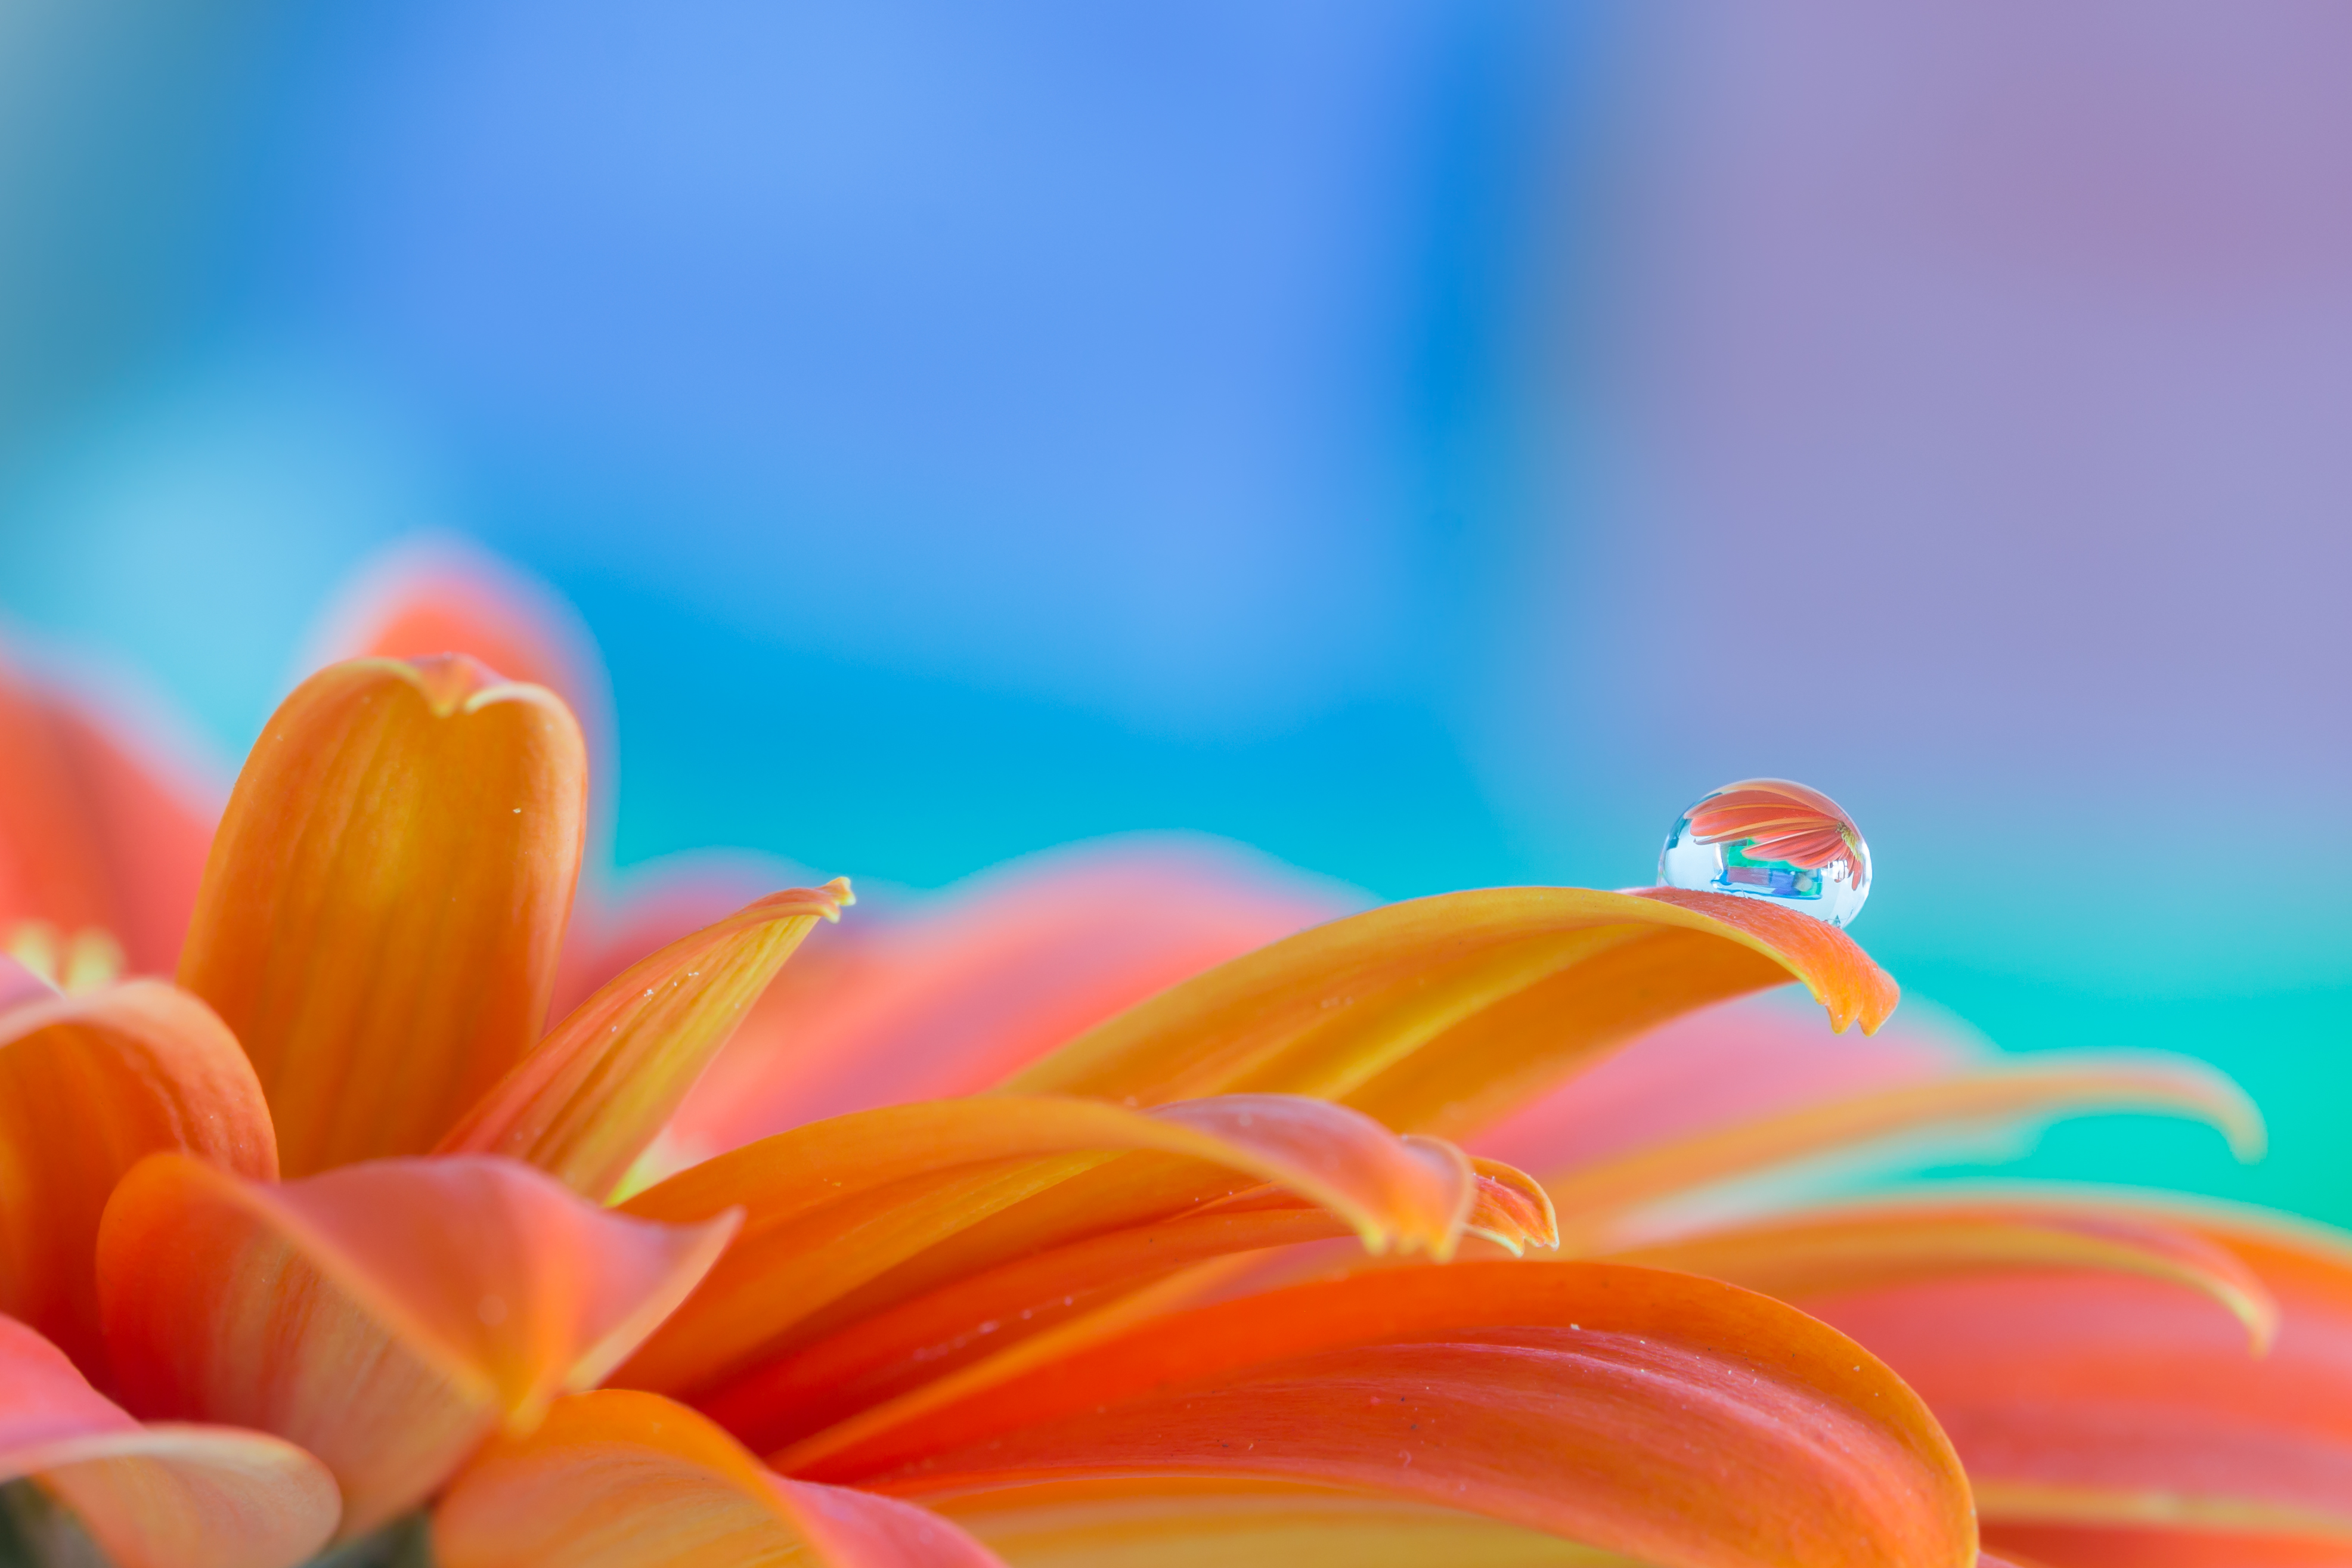 petals, drop, water, flower, macro